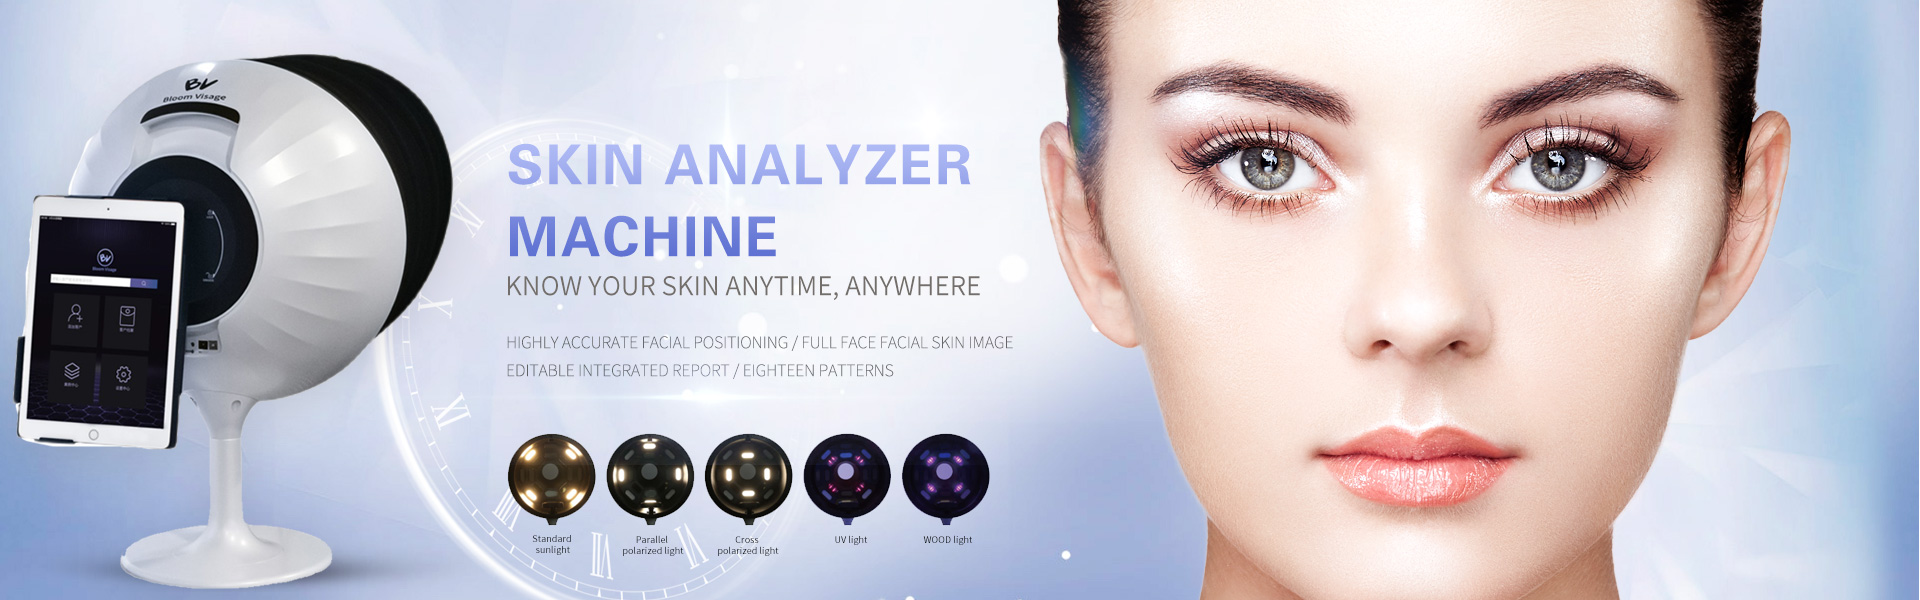 Skin Analyzer Machine